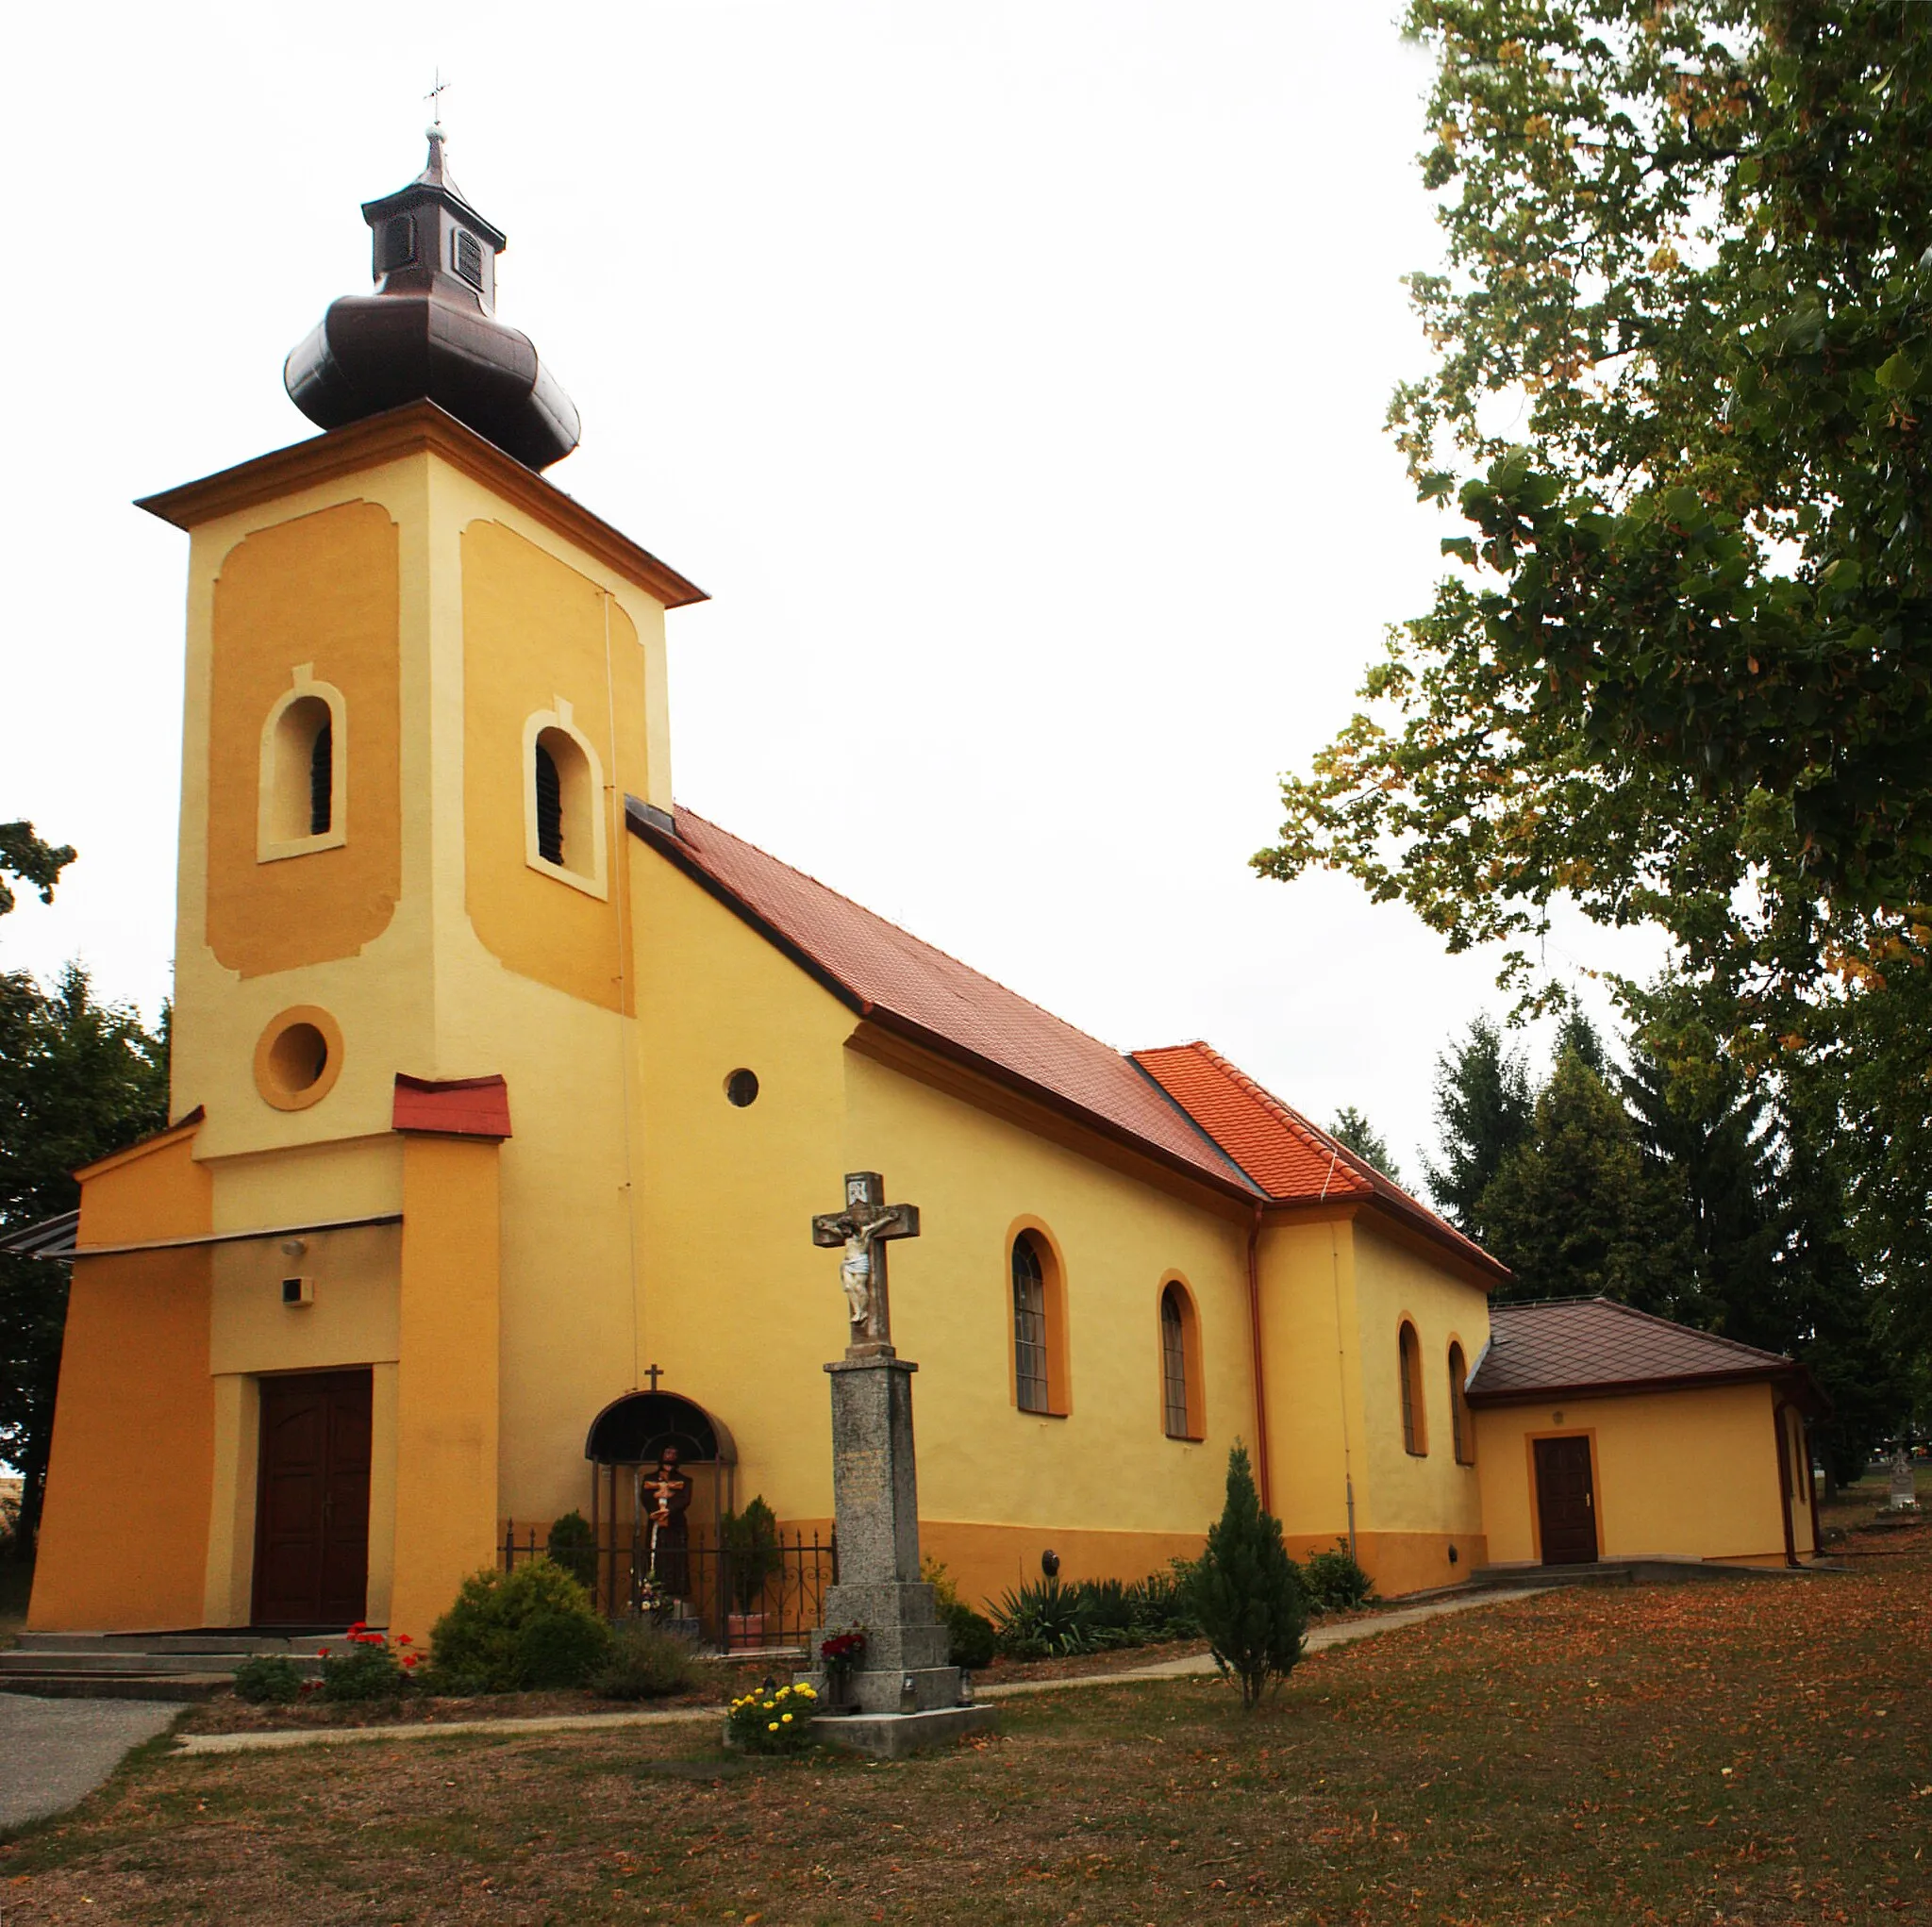 Photo showing: Kostol Najsvätejšej Trojice- katolícky, pôvodne barokový, postavený roku 1734 na staršom gotickom jadre, prestavaný v klasicistickom slohu v roku 1802. Reštaurovaný bol v roku 1936 a v roku 1992. V roku 1995 namiesto ukradnutého oltára bol postavený nový a v roku 2009 dostal kostol novú strechu. Zvon kostola pravdepodobne pochádza z jednej zo zaniknutých kaplniek hradu Gýmeš. 
A Szentháromság templom: római katolikus templom, amely eredetileg barokk stílusú volt. Egy gótikus kápolna alapjaira lett 1734-ben építve, majd 1802-ben klasszicista stílusú arculatot kapott.   Az eltulajdonított oltár helyére 1995-ben egy új került, 2009-ben pedig a templom tetőzetét felújították. A templom harangja a Gimesi vár egyik kápolnájából származik.